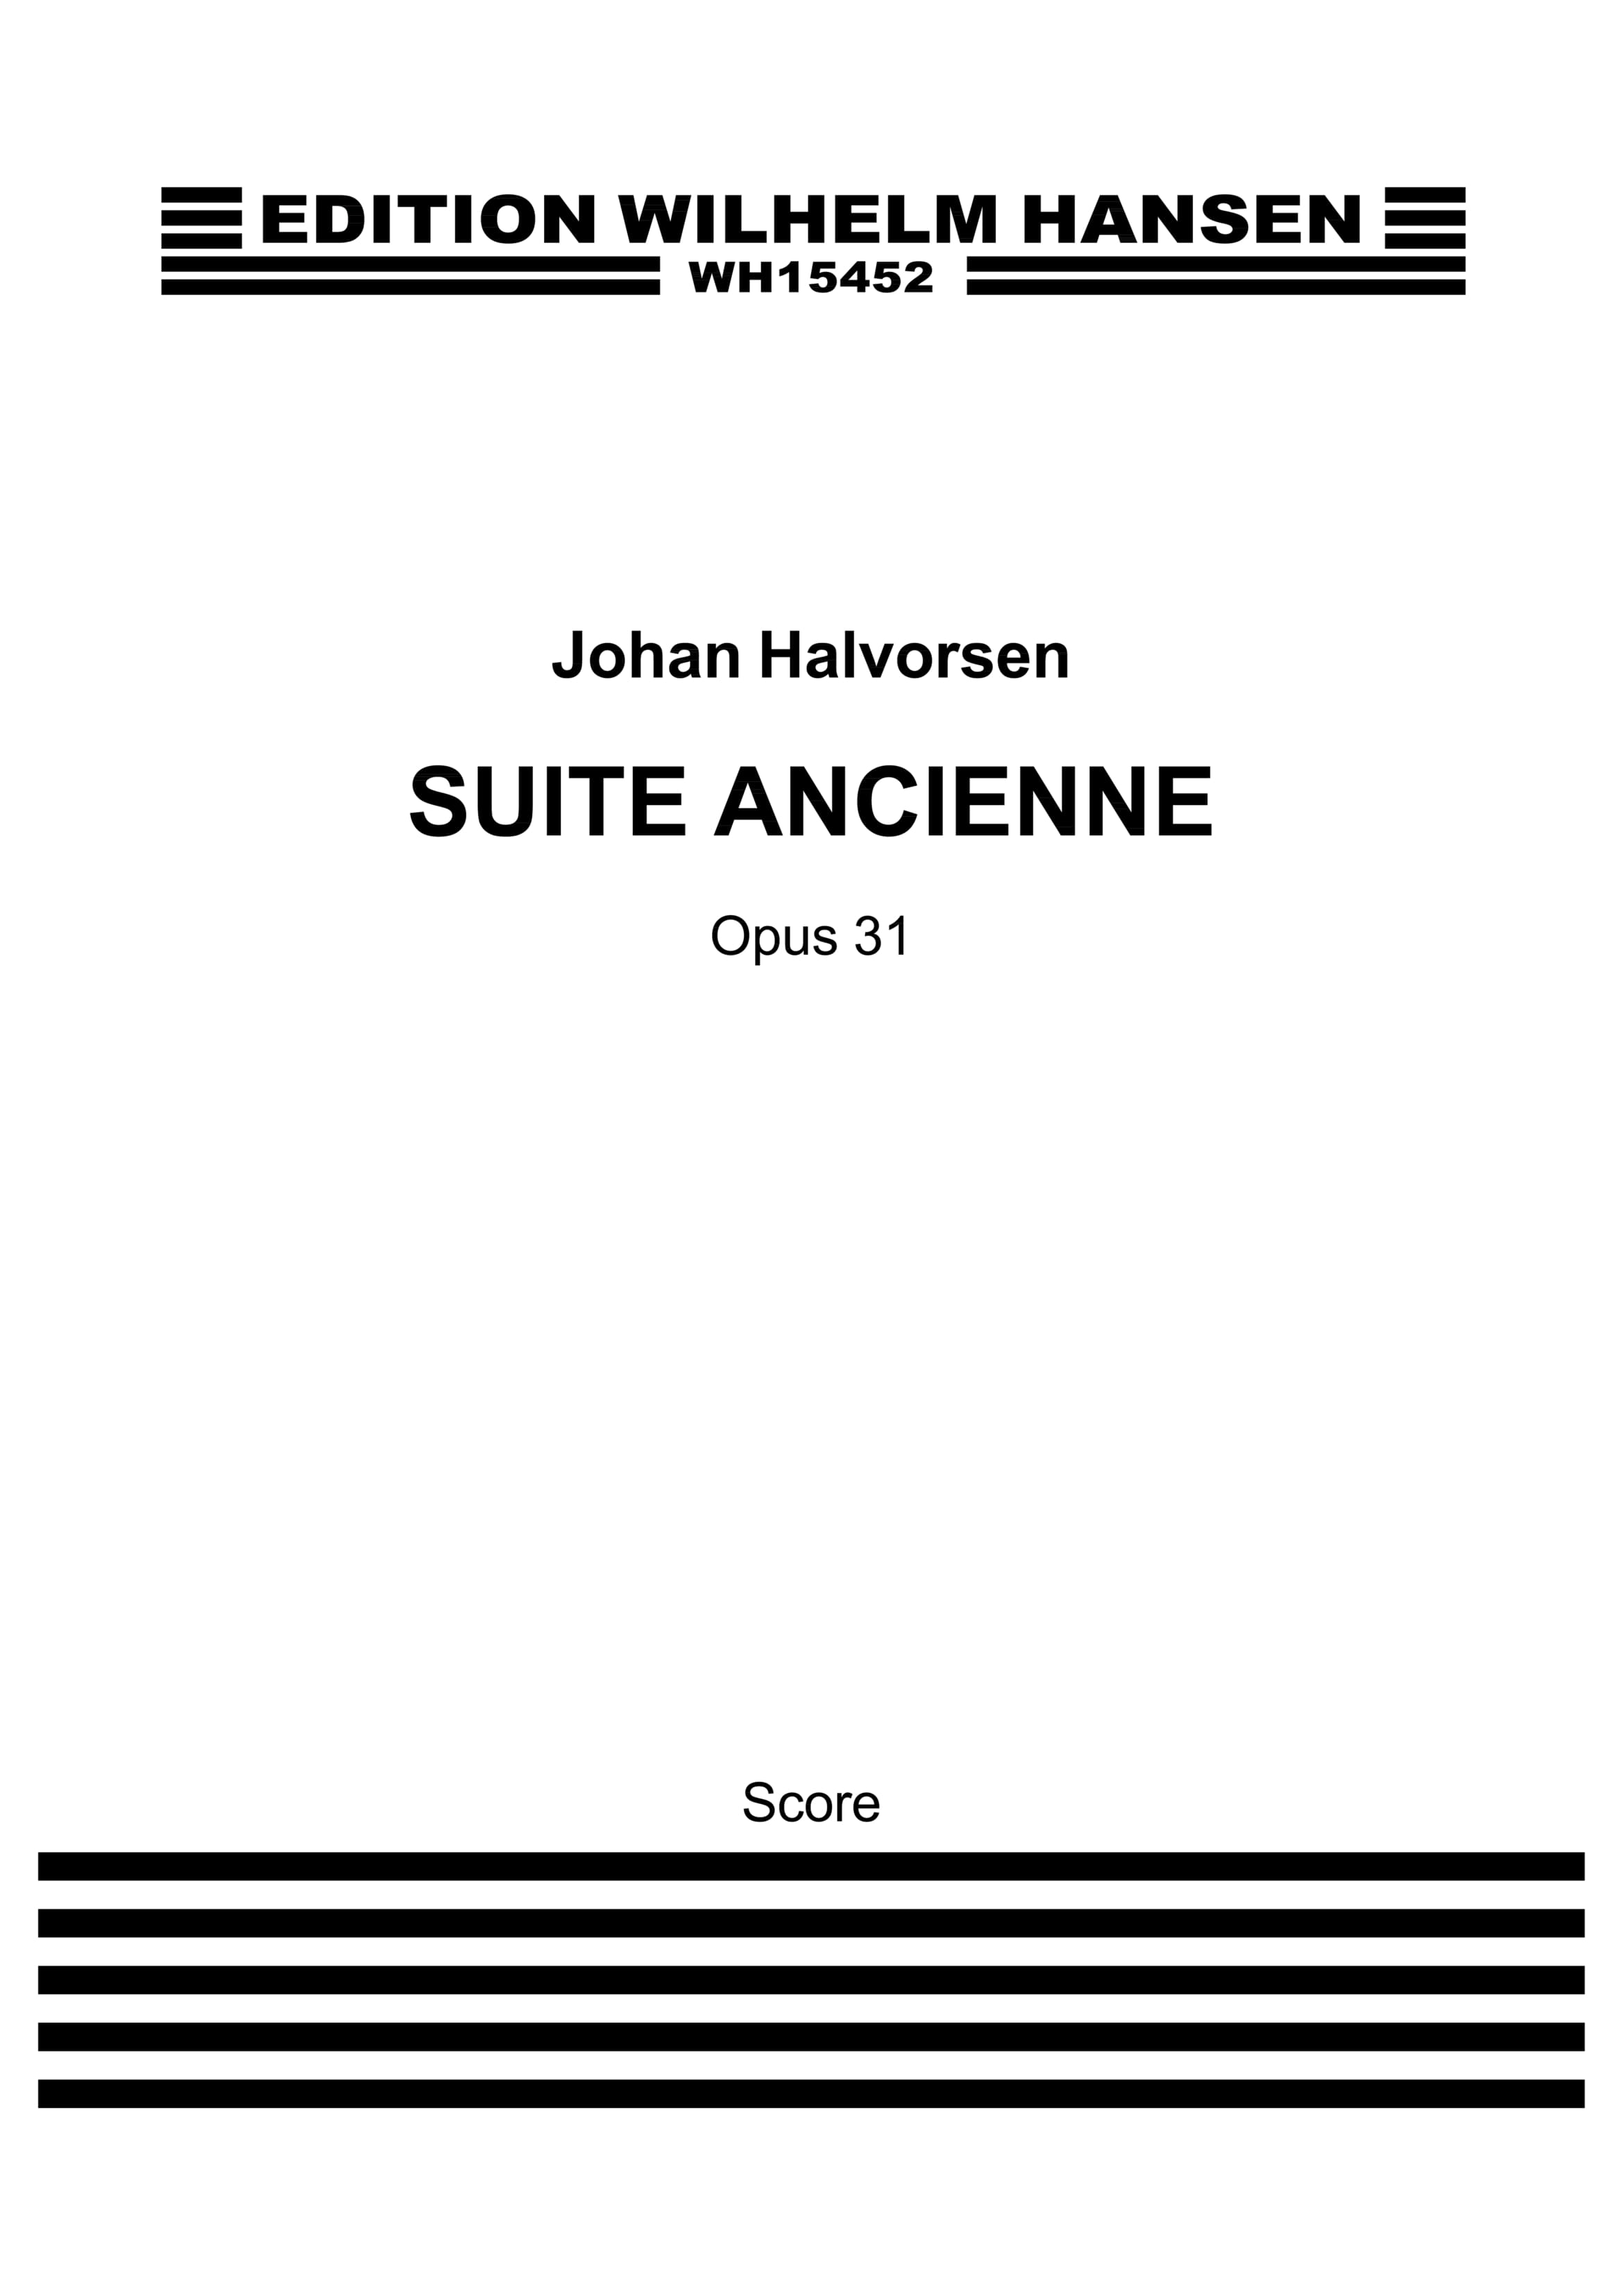 Johan Halvorsen: Suite Ancienne Op.31